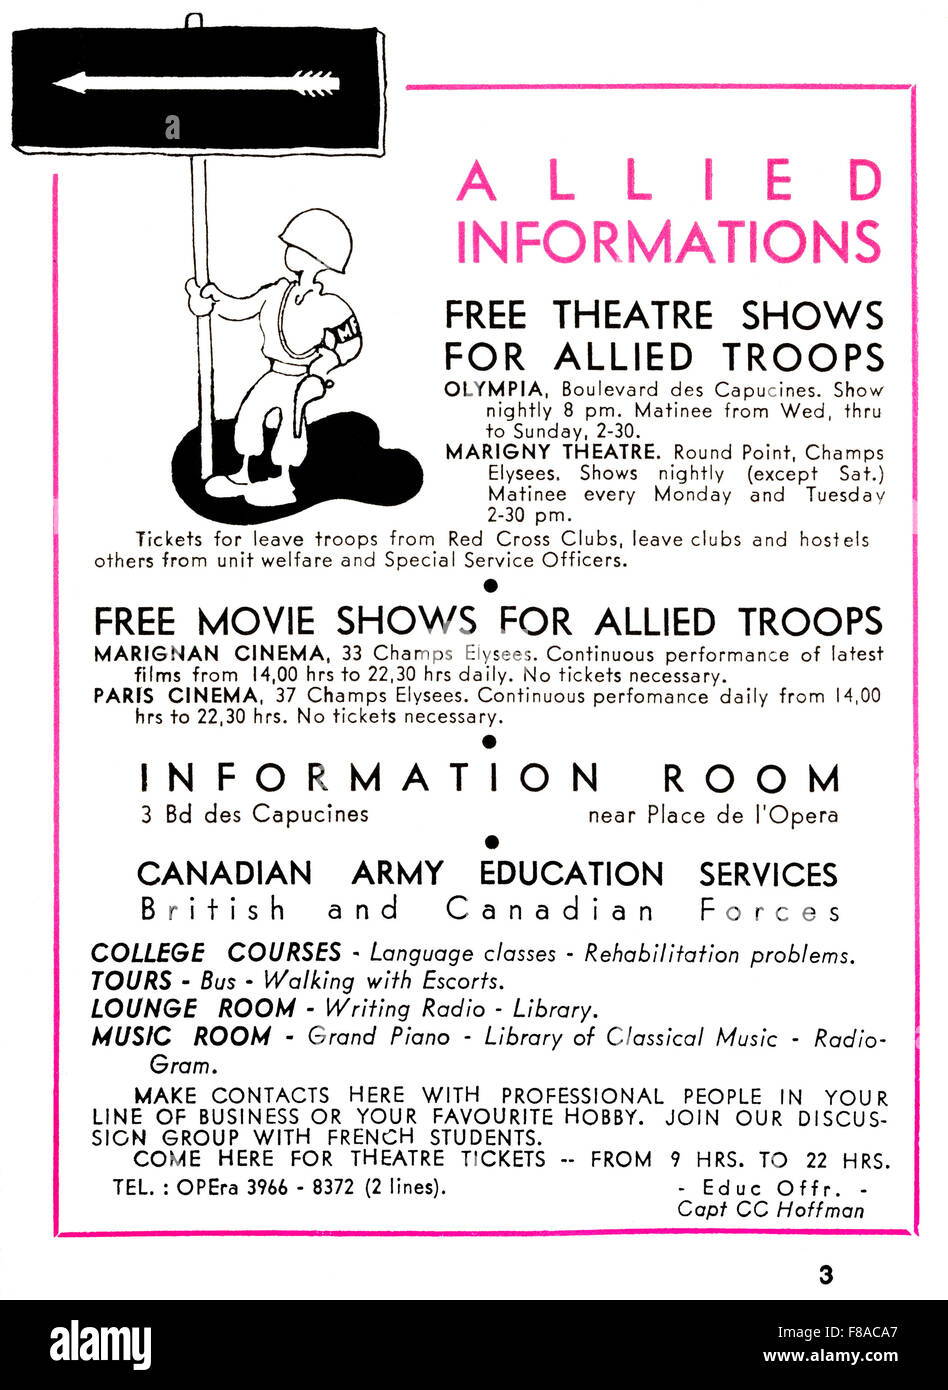 1945 WW II foglio informativo per libero spettacoli teatrali, filmati e le opportunità educative per le truppe alleate di stanza a Parigi Foto Stock